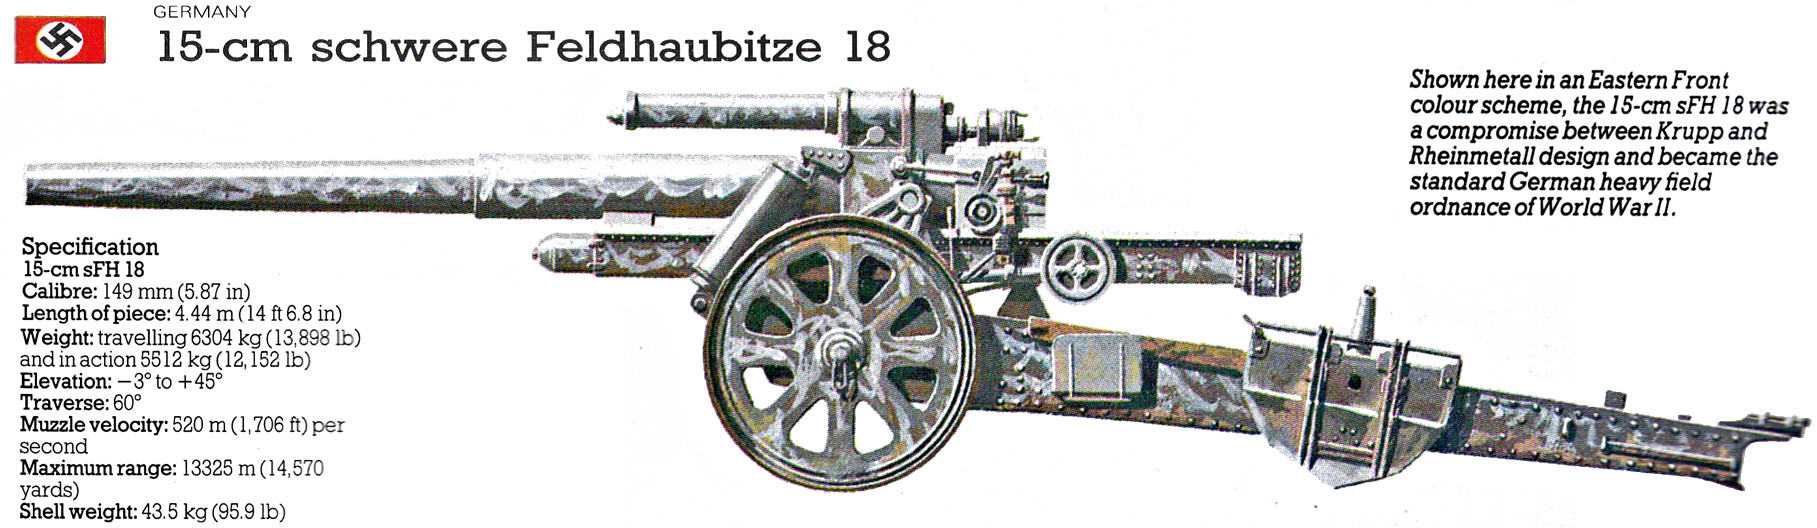 150mm sFH18 тяжелая полевая гаубица (Германия1933) цвет.jpg